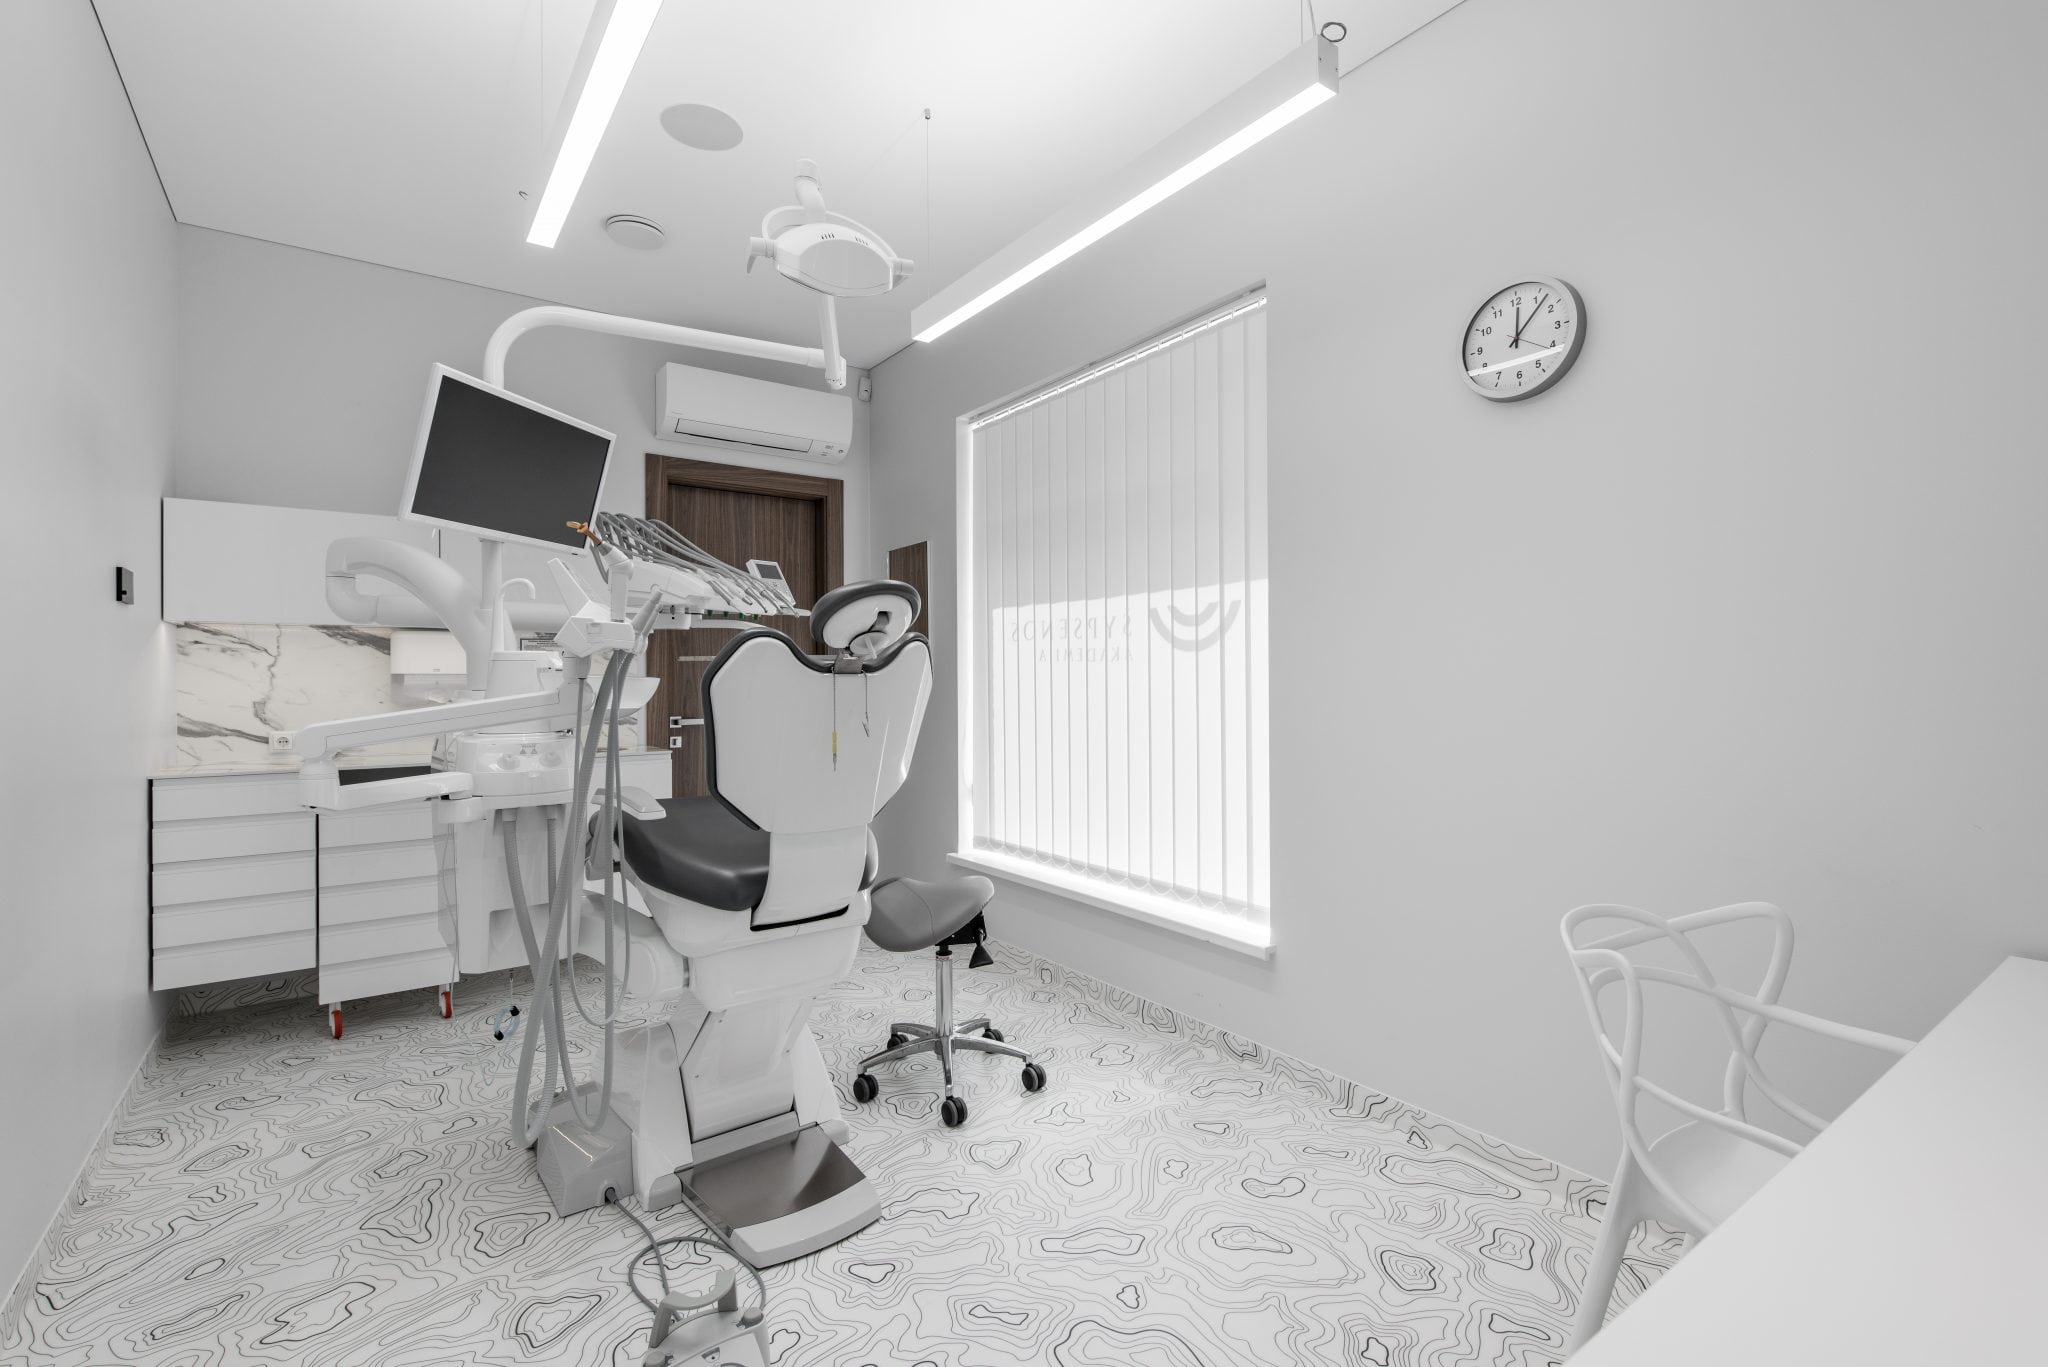 Interjero sprendimai verslui, odontologijos kabinetui, įgyvendintas baldų gamybos projektas.